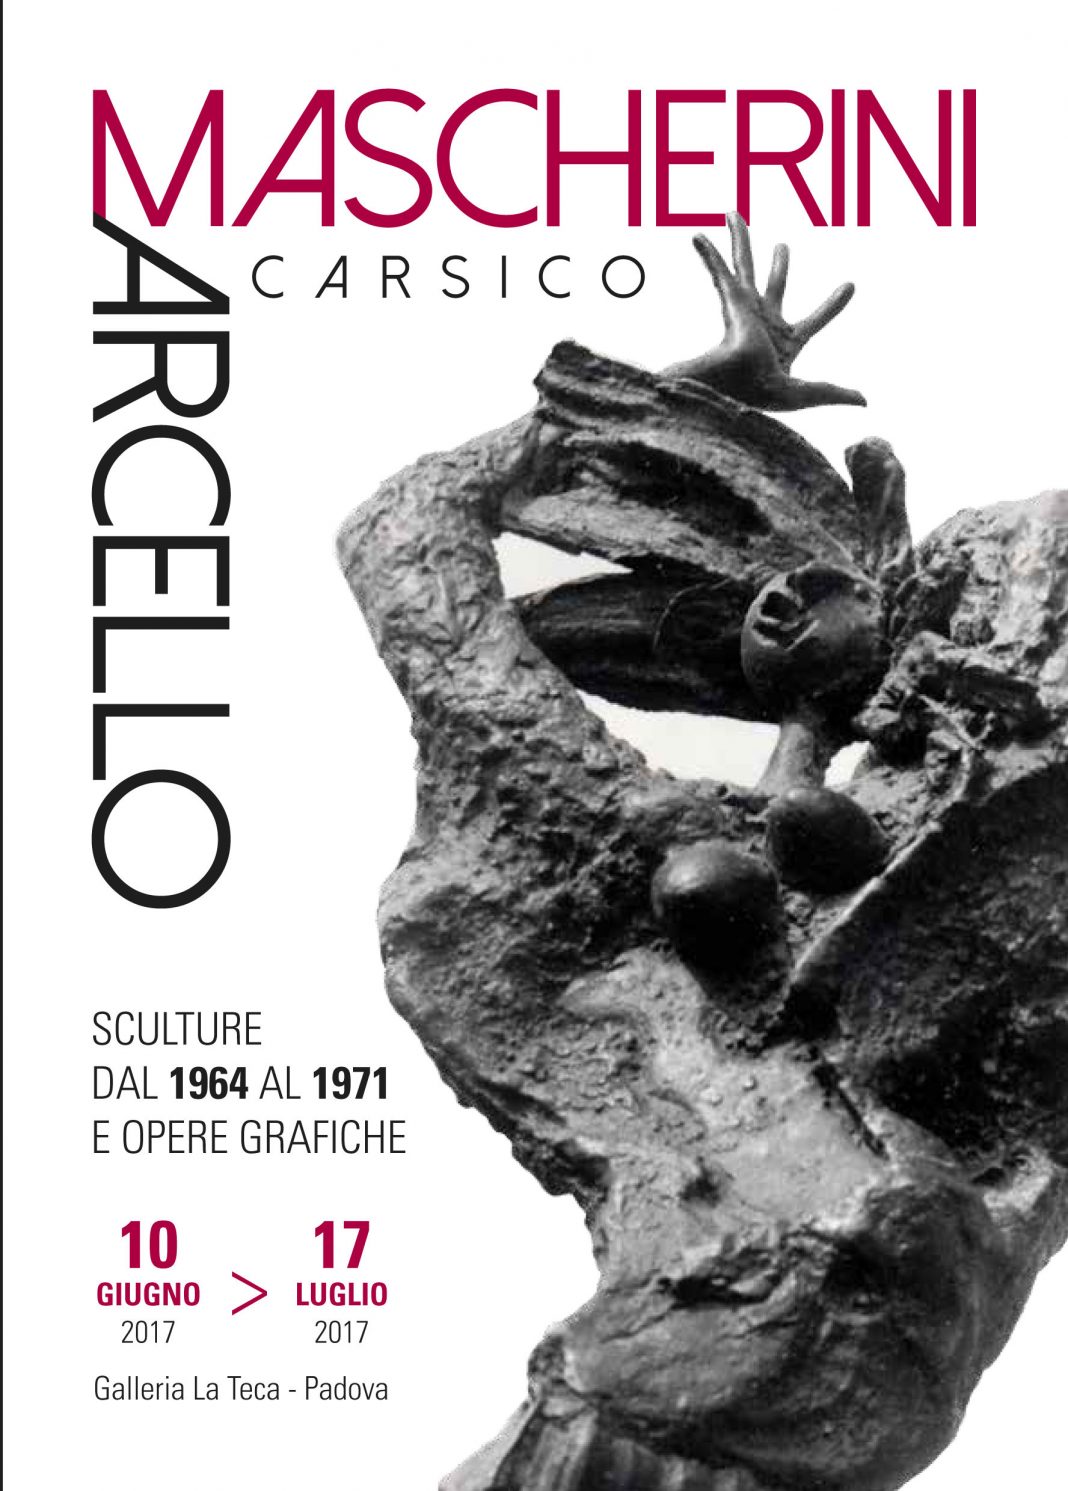 Marcello Mascherini – Carsico.  Sculture dal 1964 al 1971  e opere grafichehttps://www.exibart.com/repository/media/eventi/2017/06/marcello-mascherini-8211-carsico.-sculture-dal-1964-al-1971-e-opere-grafiche-1068x1491.jpg